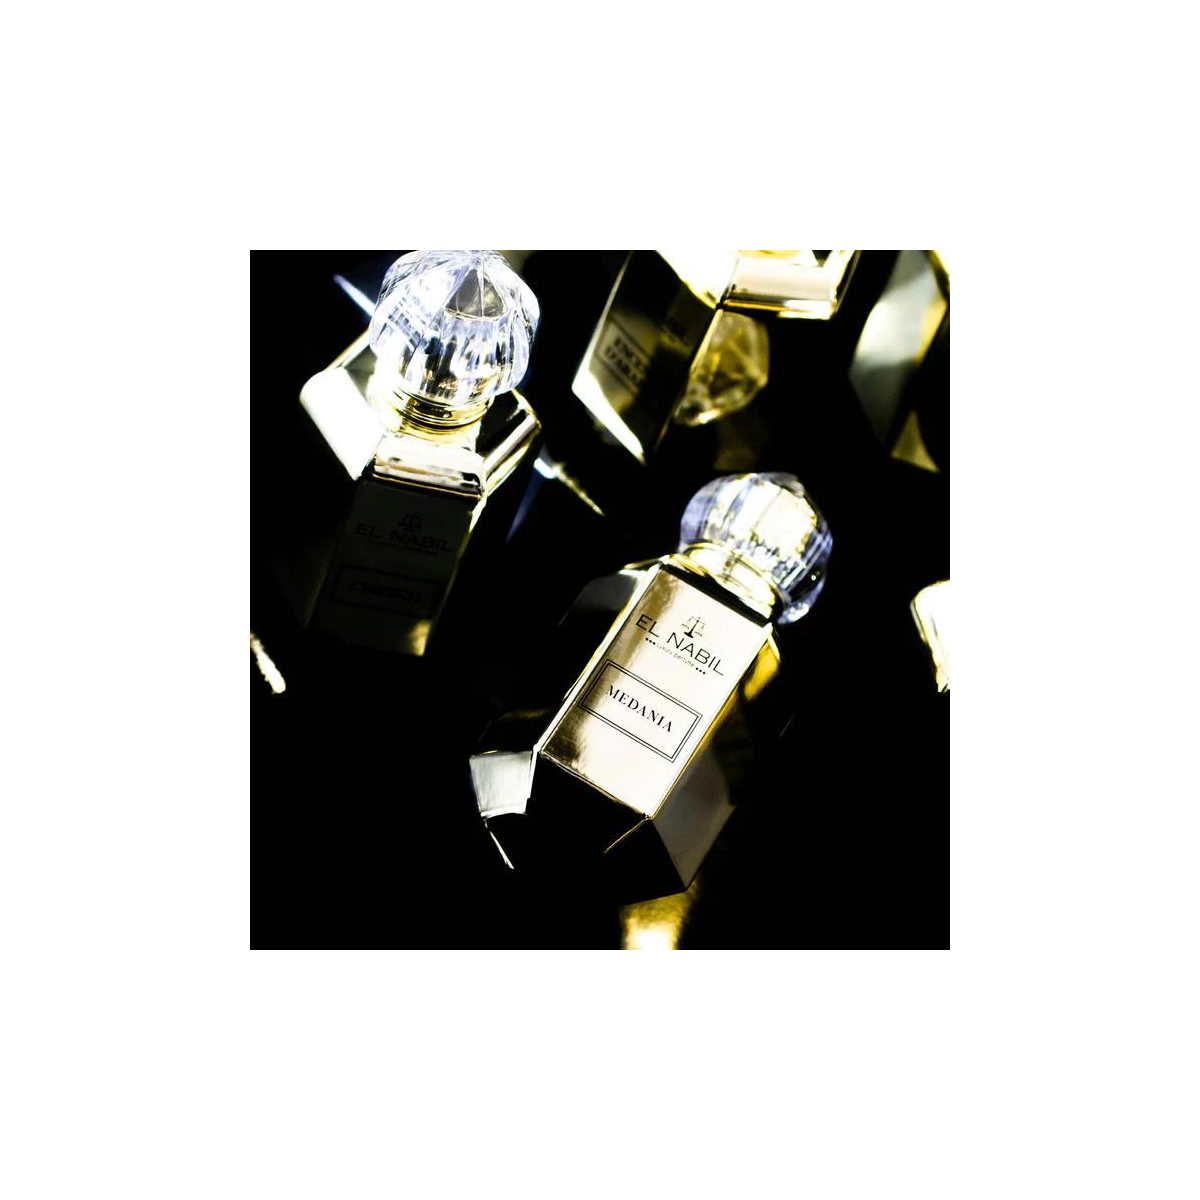 Medania - eau de parfum - 65ml - El Nabil